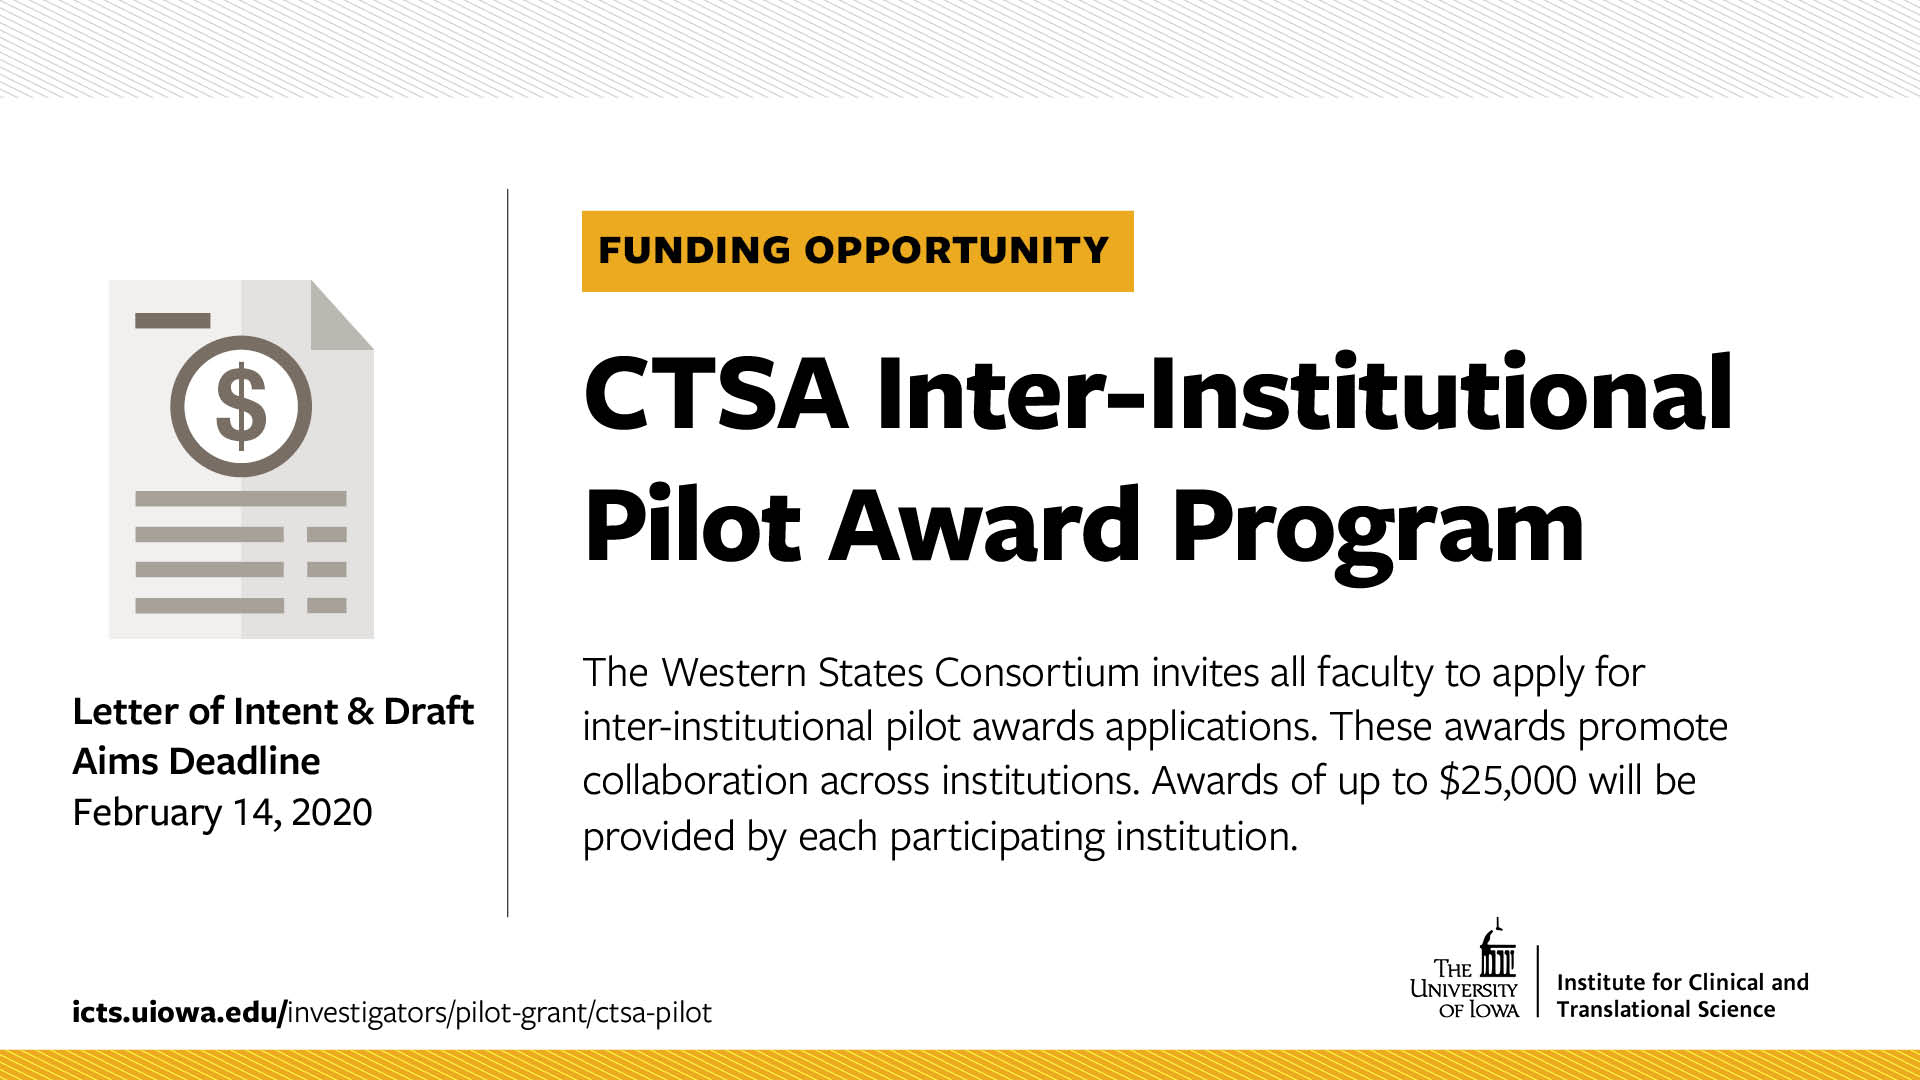 CTSA Inter-Institutional Pilot Award